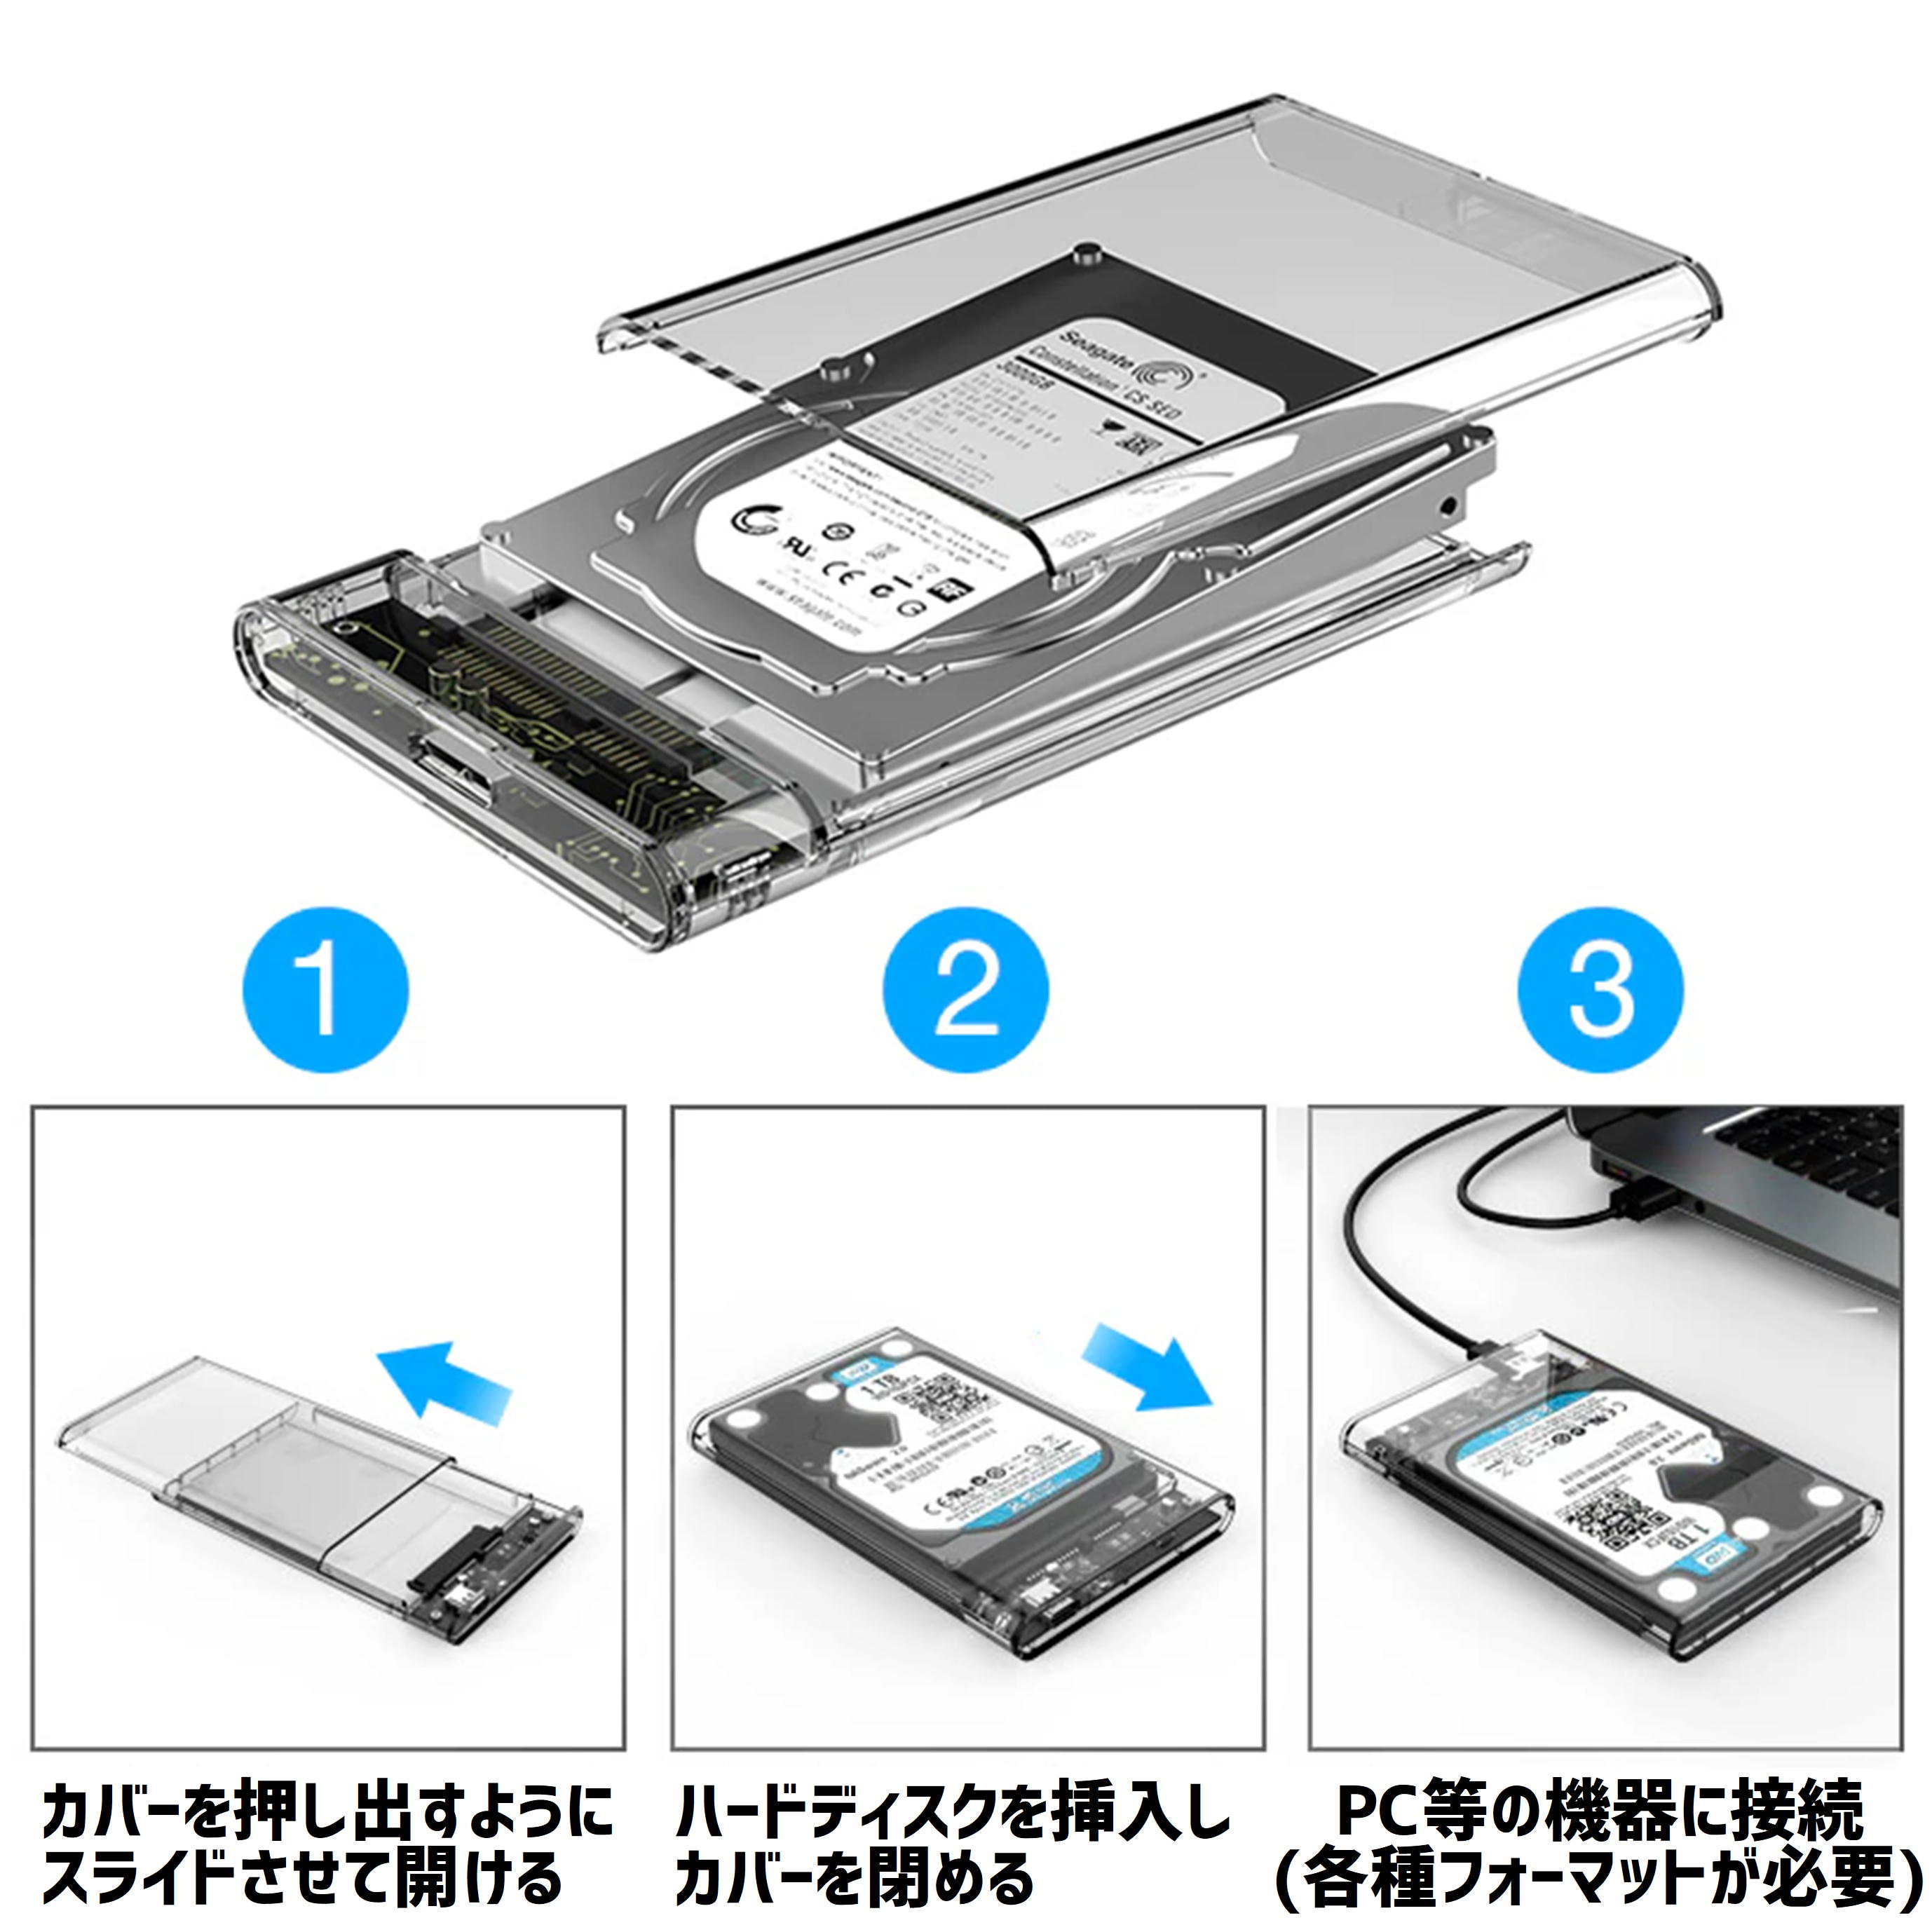 SSD/HDD кейс прозрачный USB3.0 соответствует установленный снаружи 2.5 дюймовый SATA внешний источник питания не необходимо каркас 2 шт до почтовая доставка включение в покупку возможность [M3]